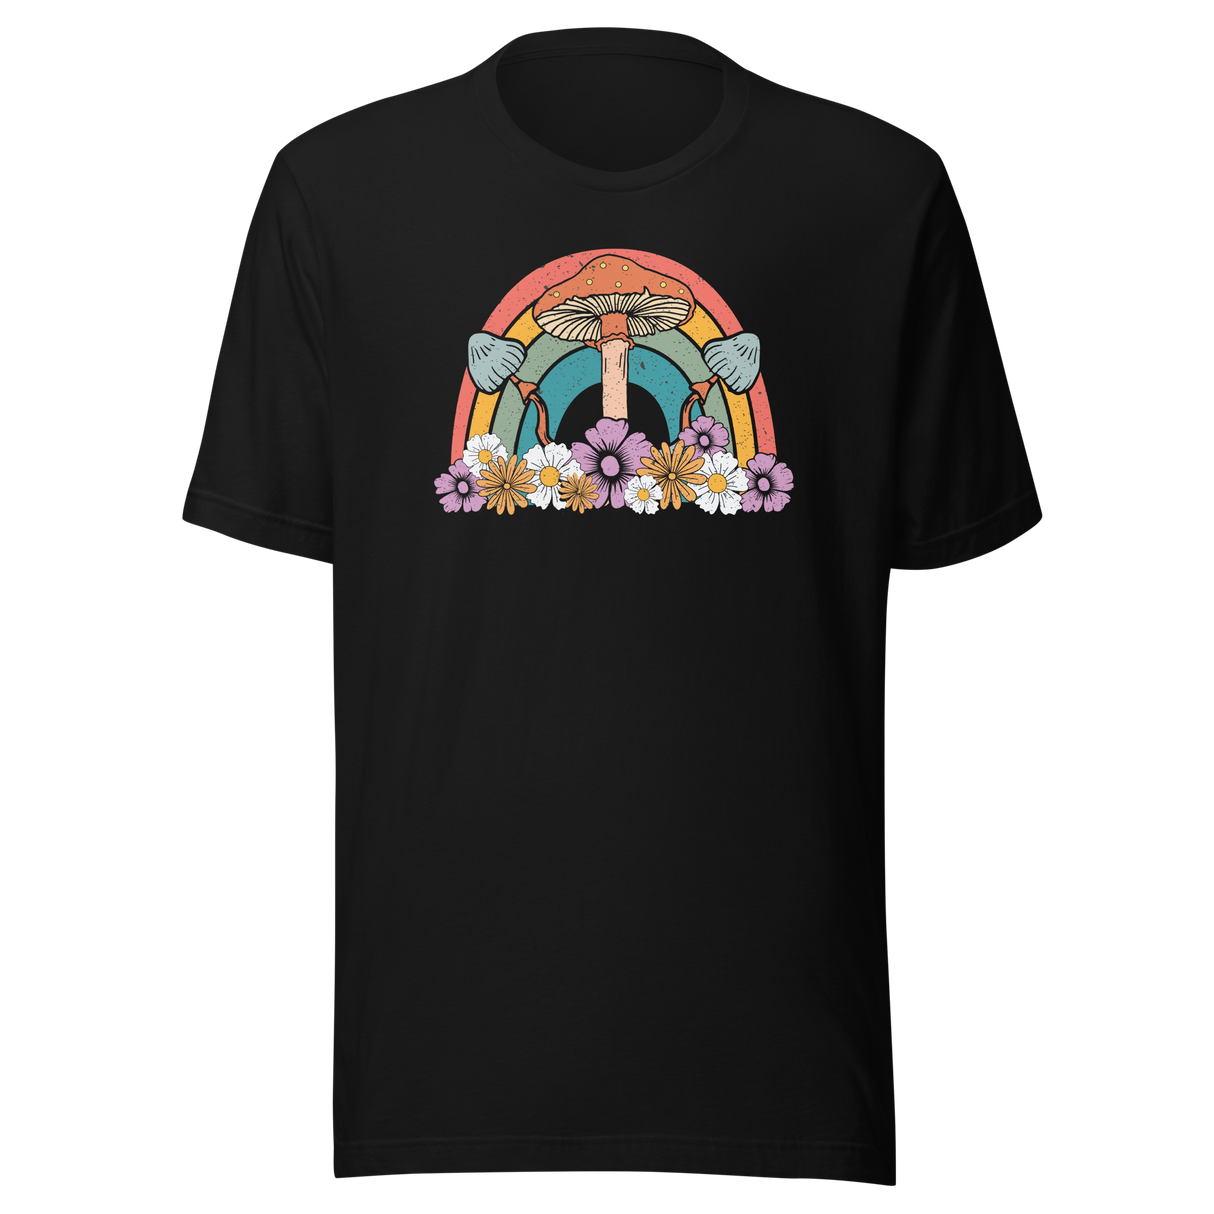 Rainbow With Flowers And Mushrooms - Rainbow Tee - Life T-Shirt - Rainbow Tee - Flowers T-Shirt - Mushrooms Tee